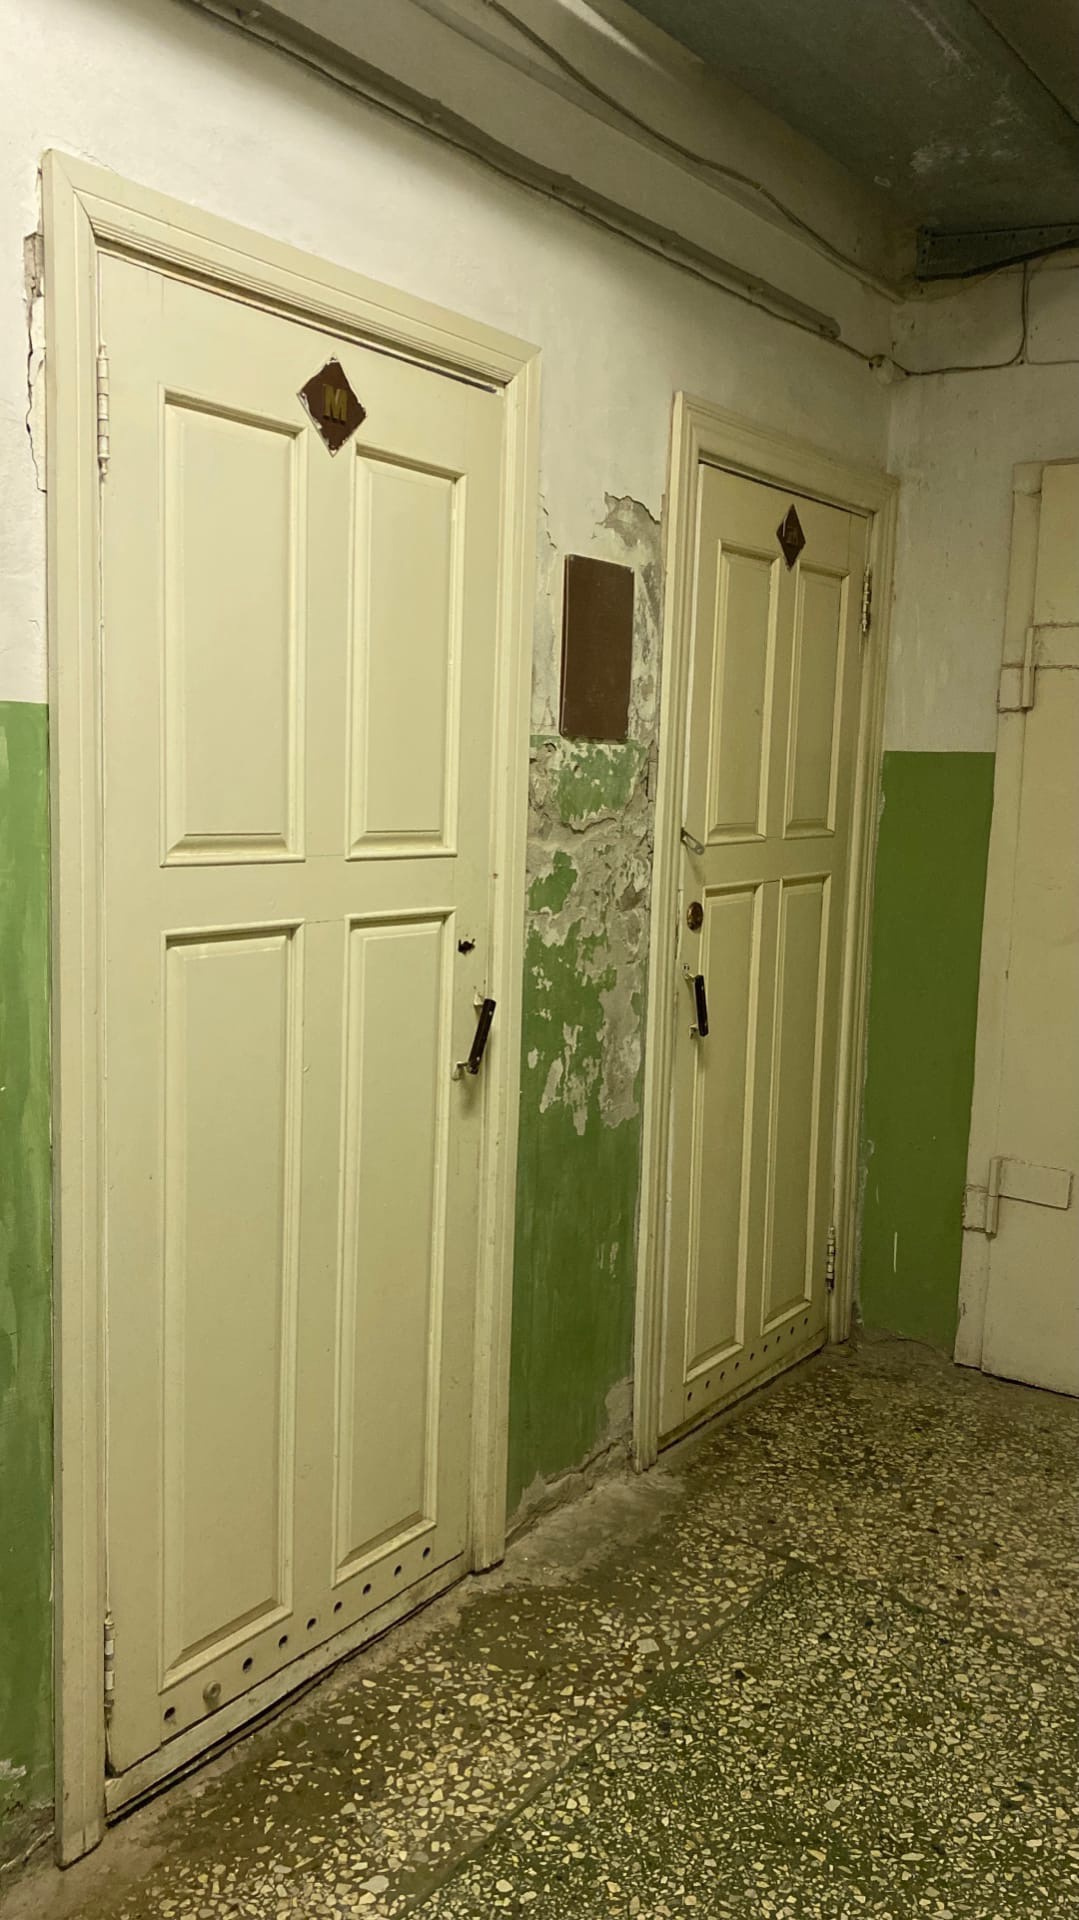 Двери туалетов в общежитии <nobr class="_">№ 9</nobr>. Кажется, стены требуют ремонта